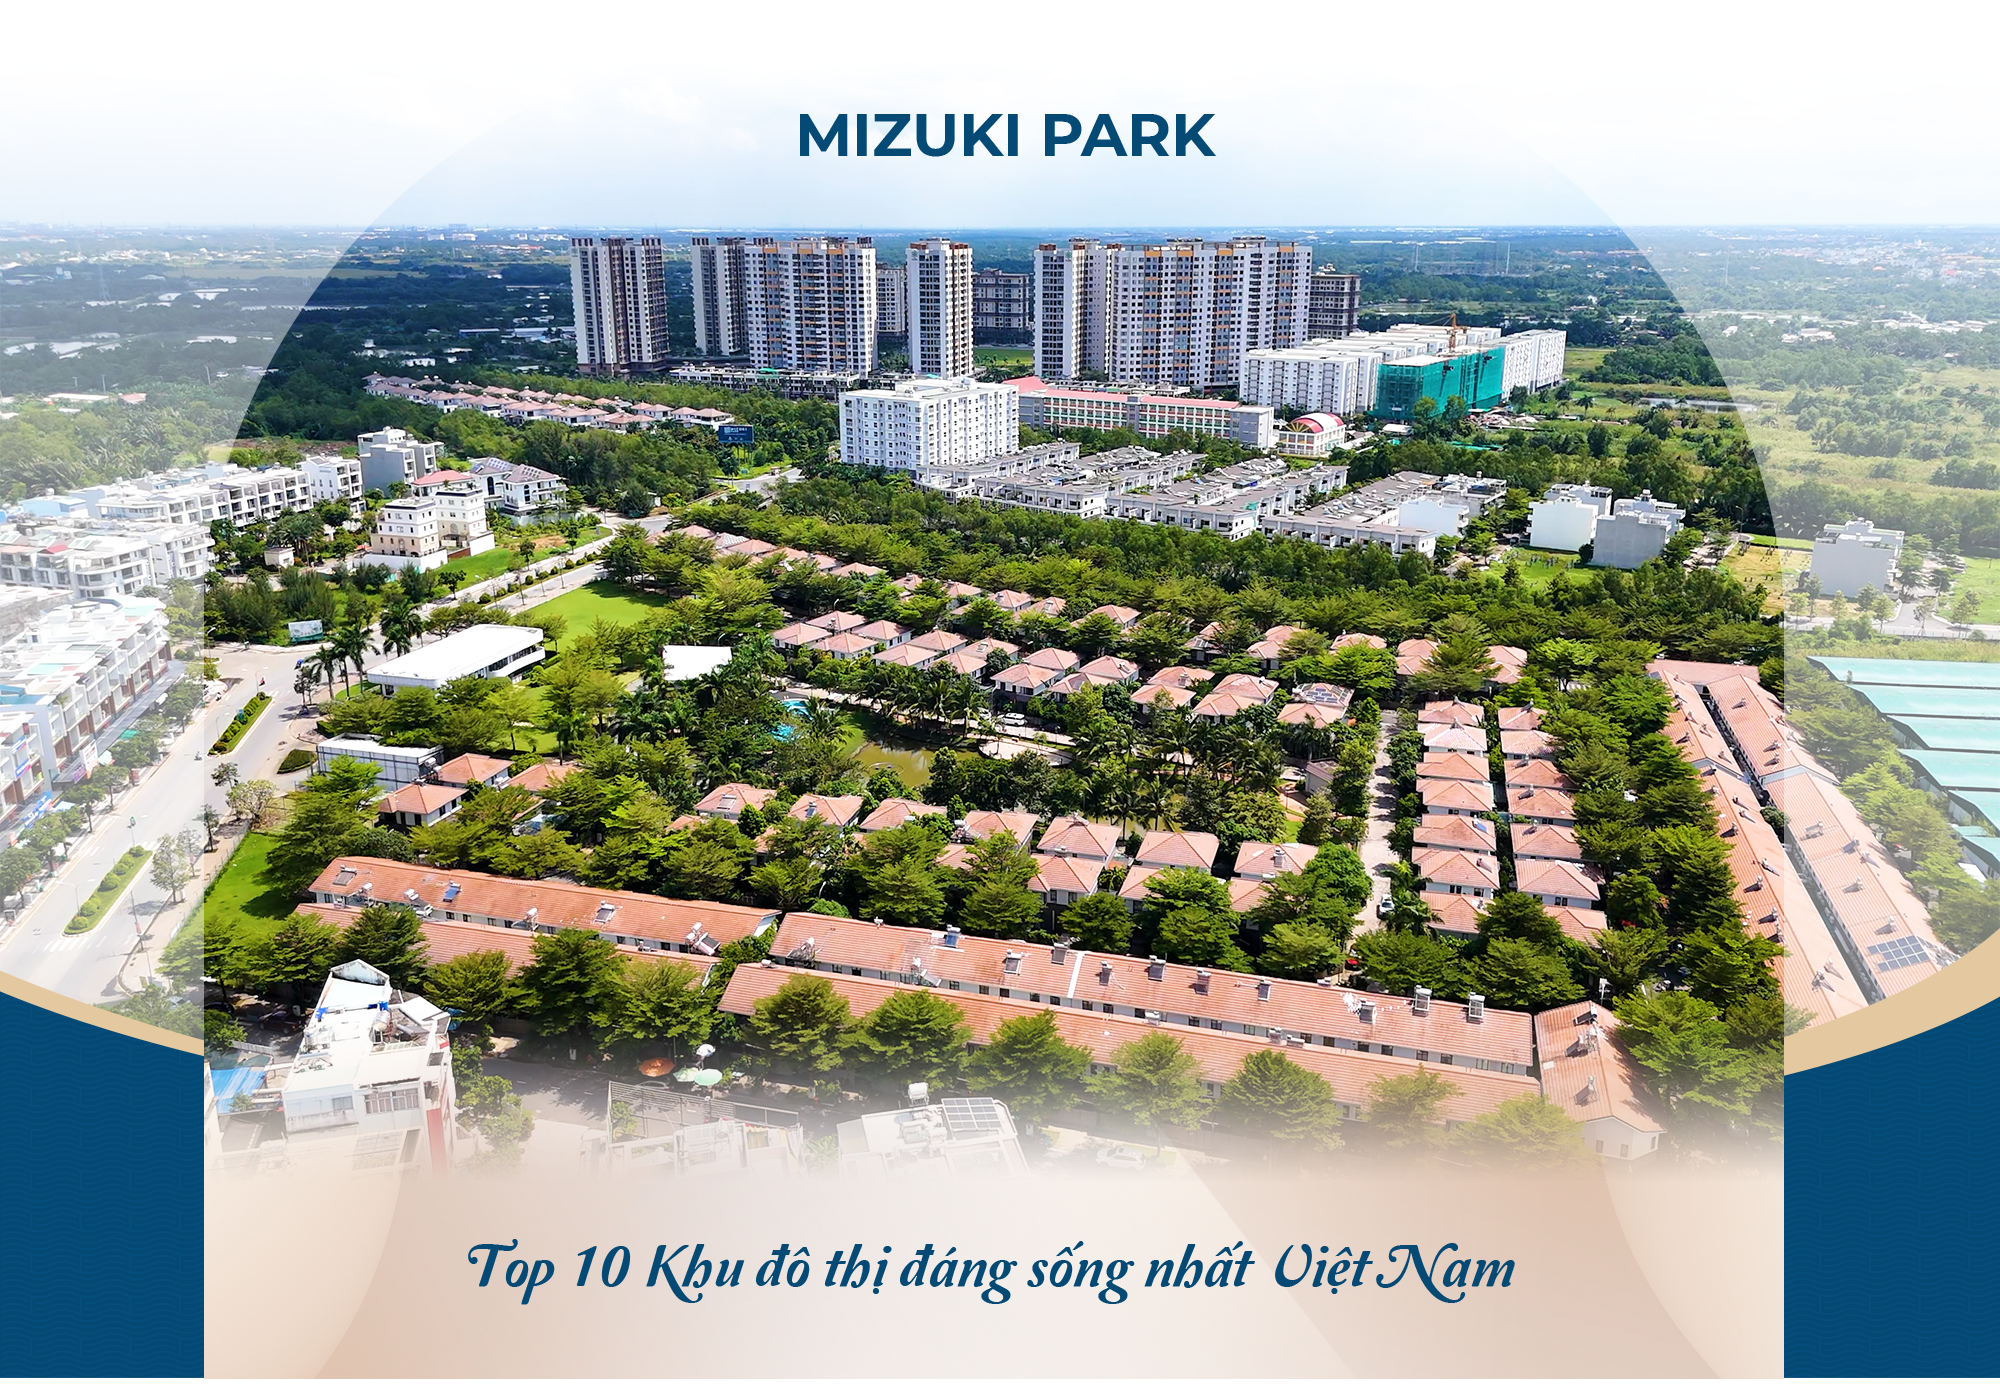 Mizuki Park: Chốn về bình yên giữa thị thành - Ảnh 2.